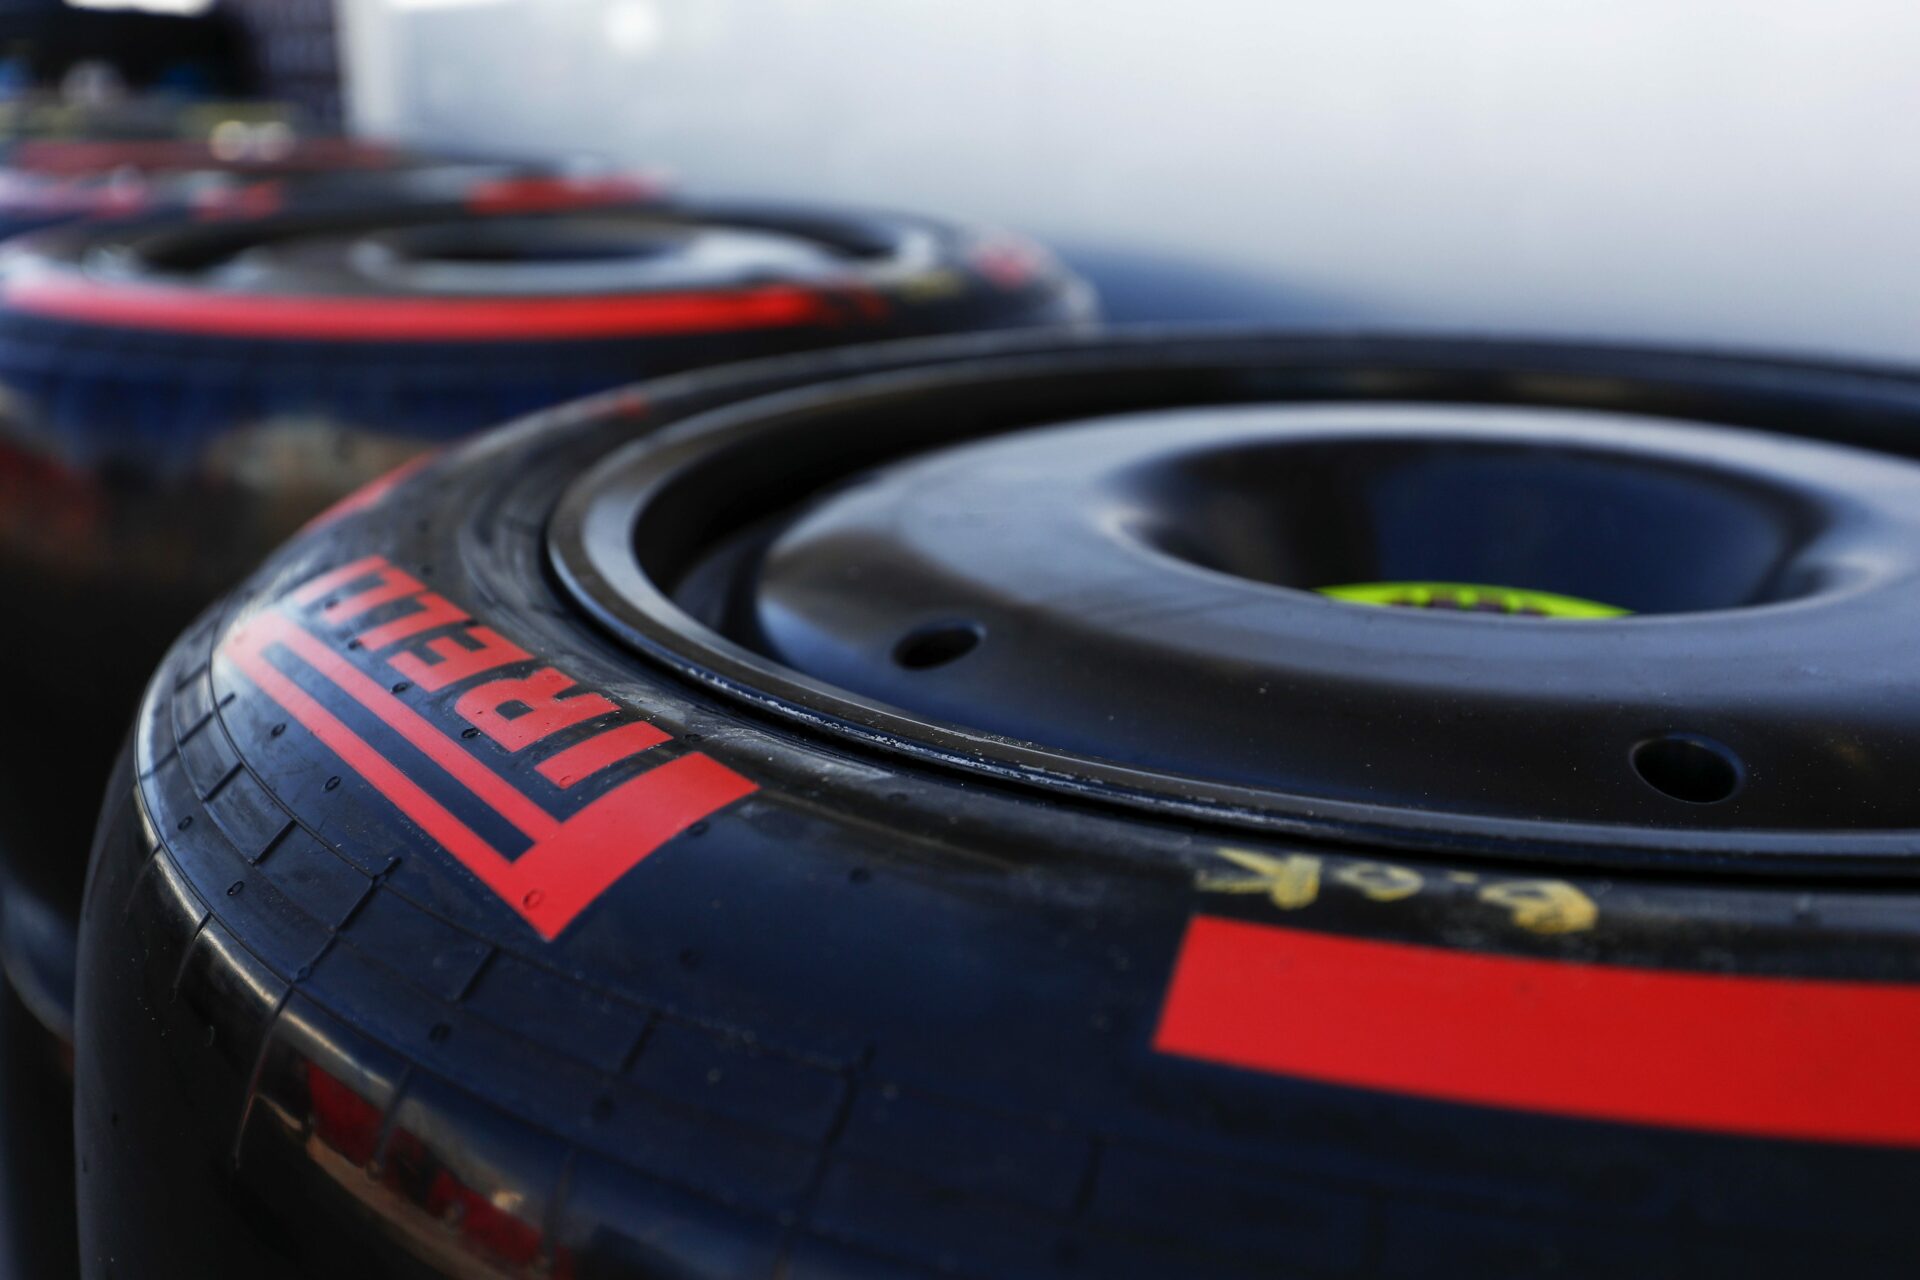 2 prácticas libres en México reservadas para pruebas Pirelli